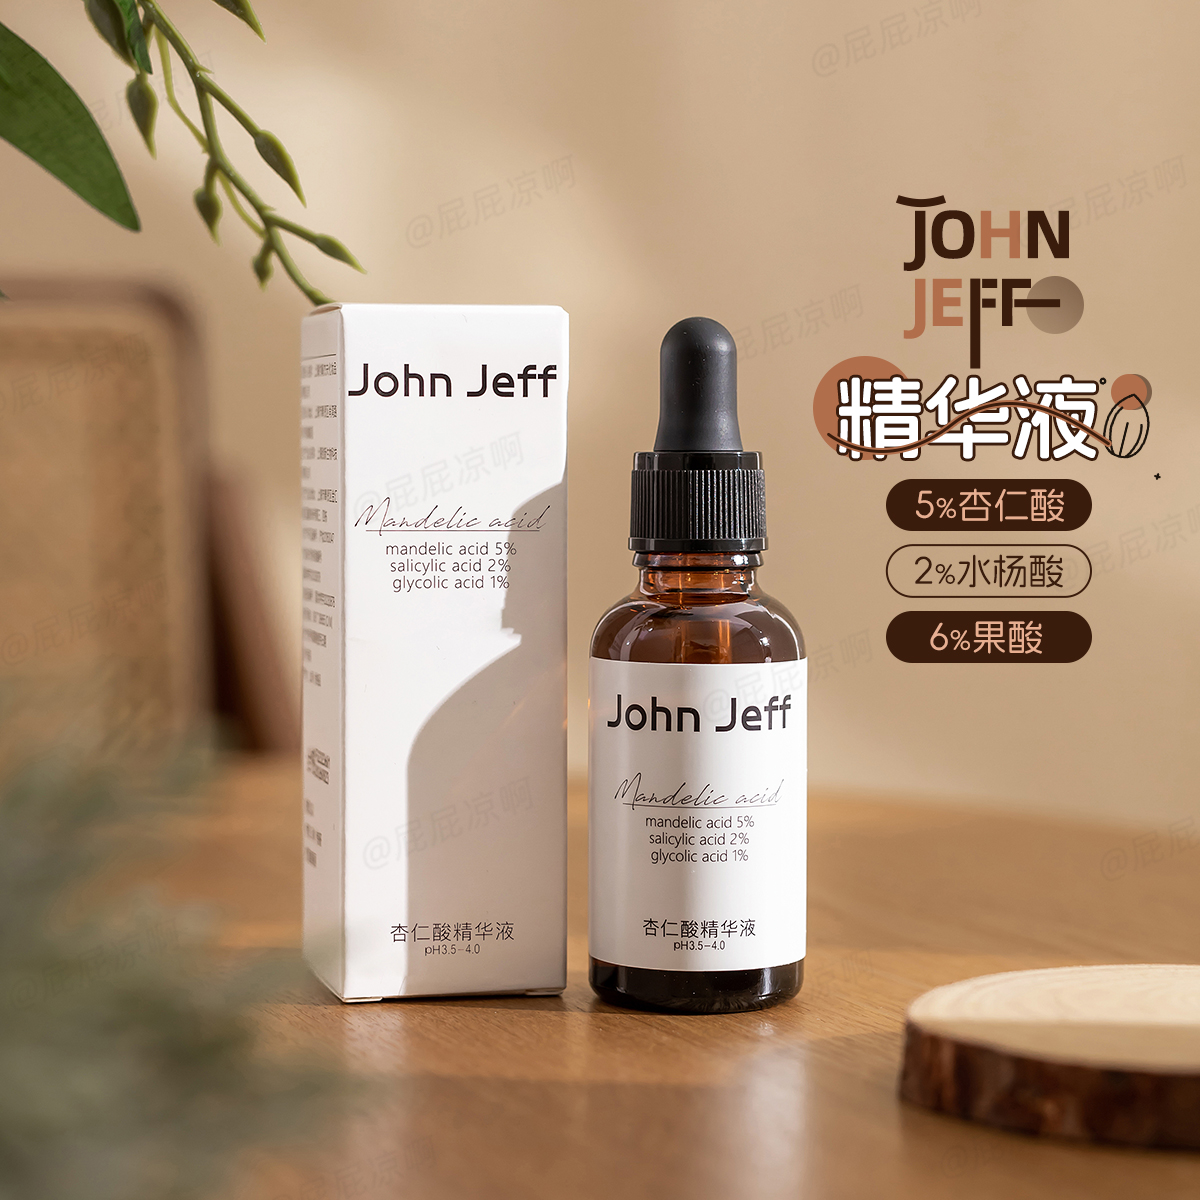 John Jeff 5%杏仁酸精华液2%水杨酸6%果酸祛痘去闭口角质JohnJeff